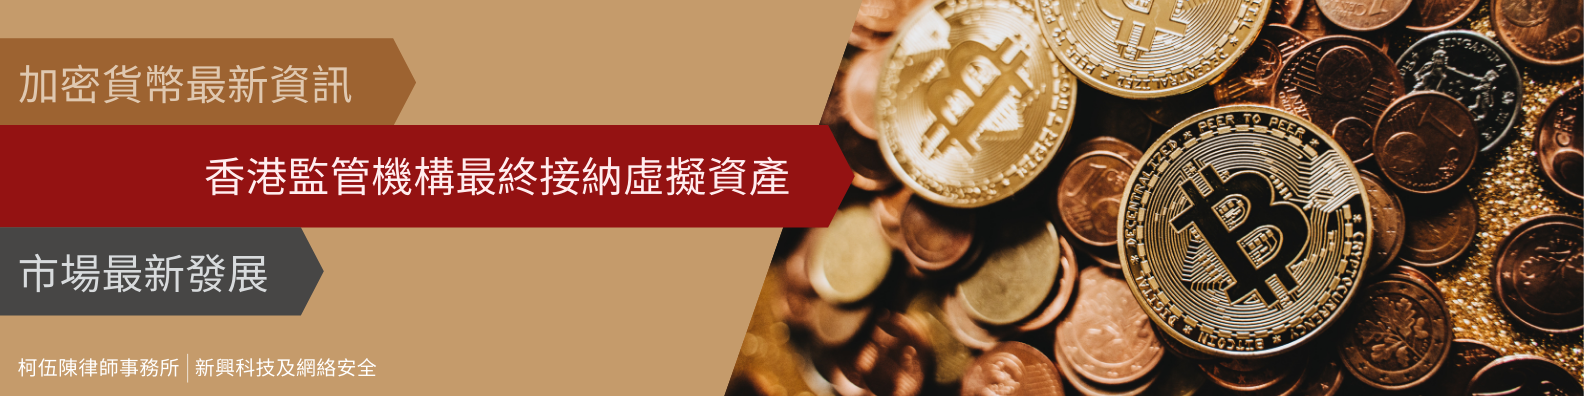 加密貨幣最新資訊 | 香港監管機構最終接納虛擬資產 | 市場最新發展